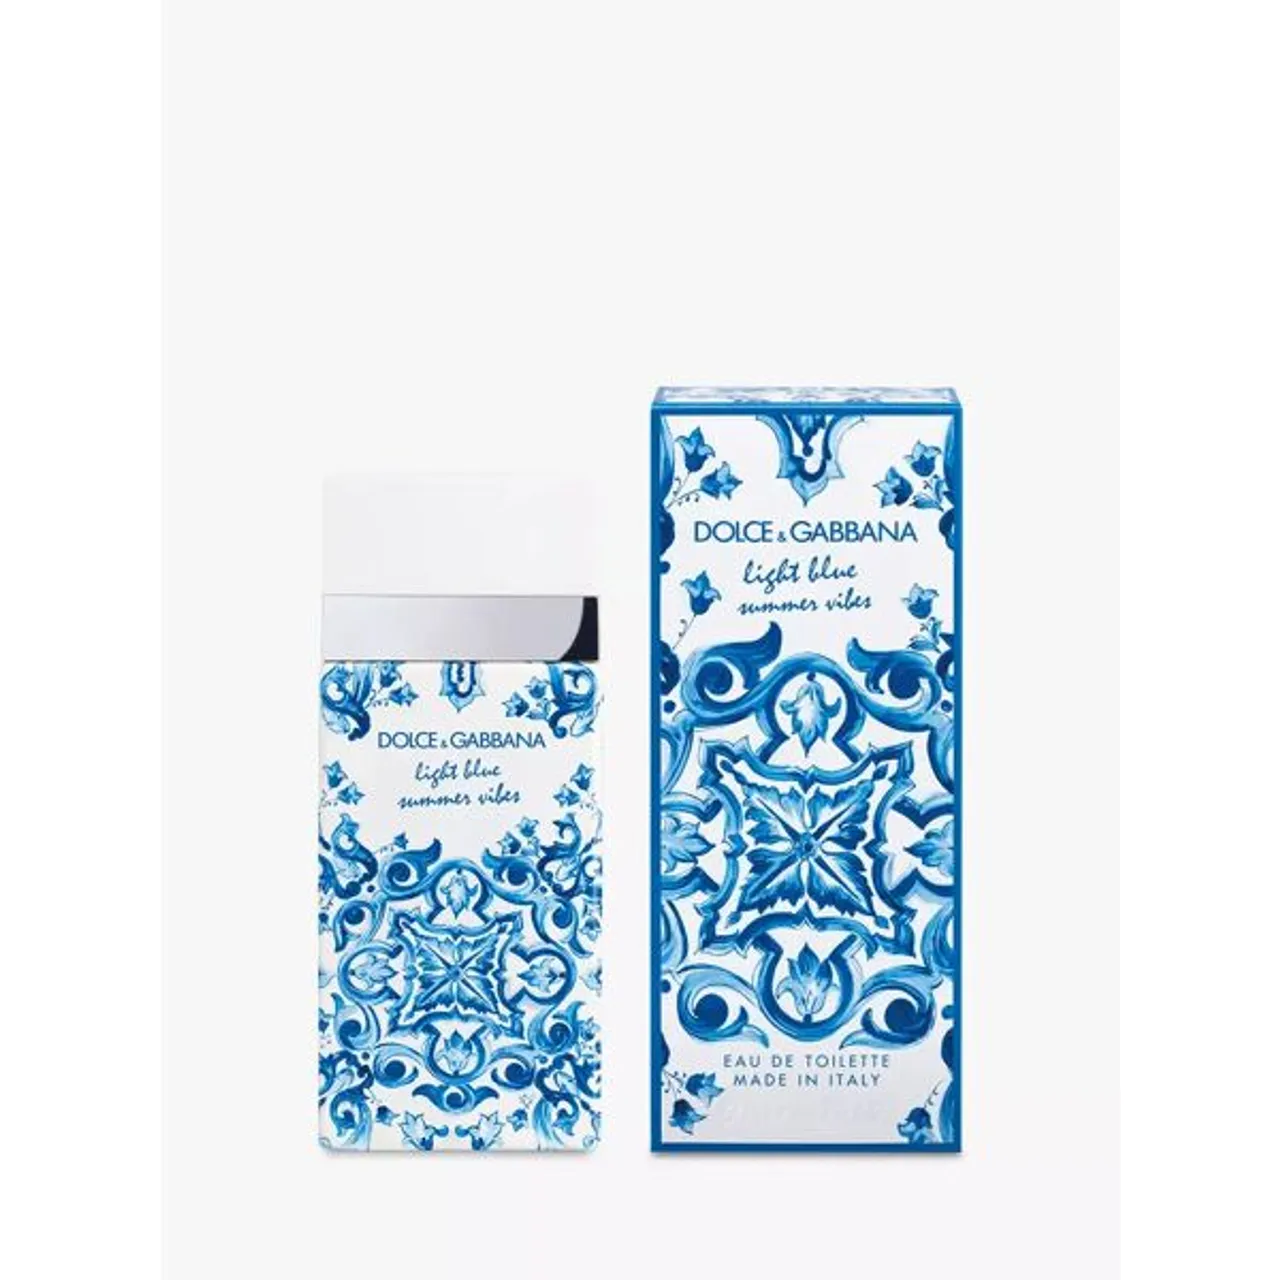 Dolce & Gabbana Light Blue Summer Vibes Eau de Toilette - Female - Size: 50ml